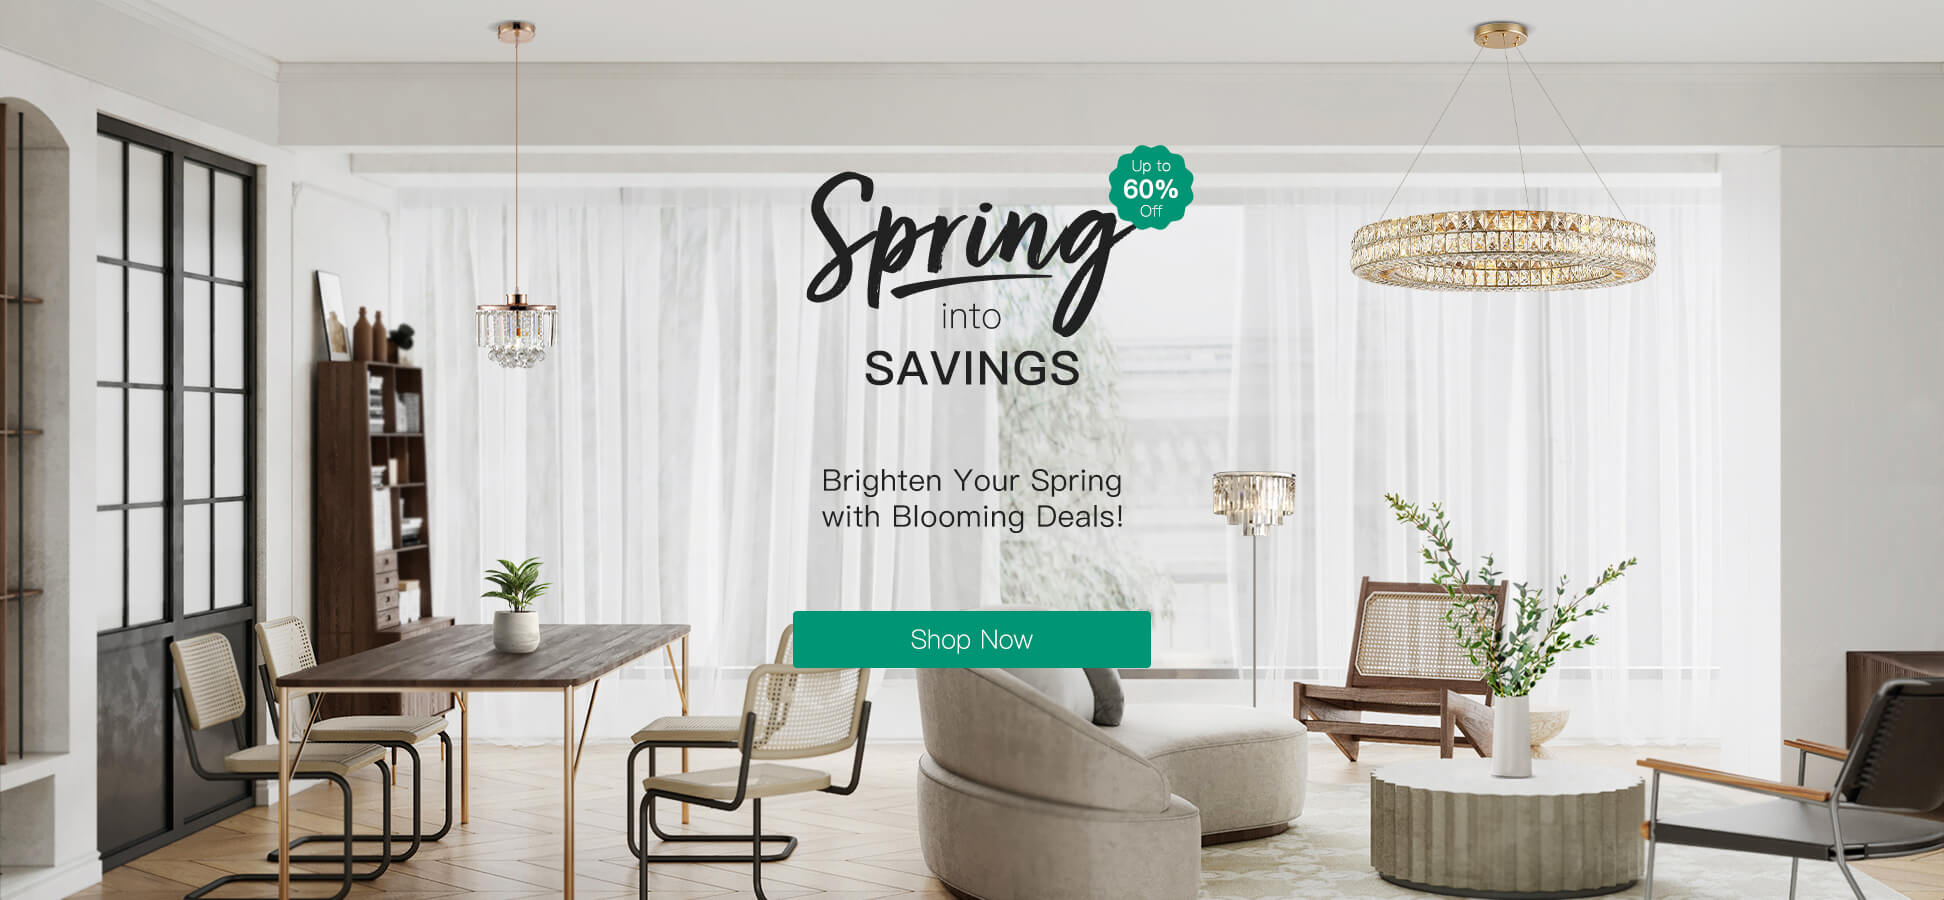 Spring into savings